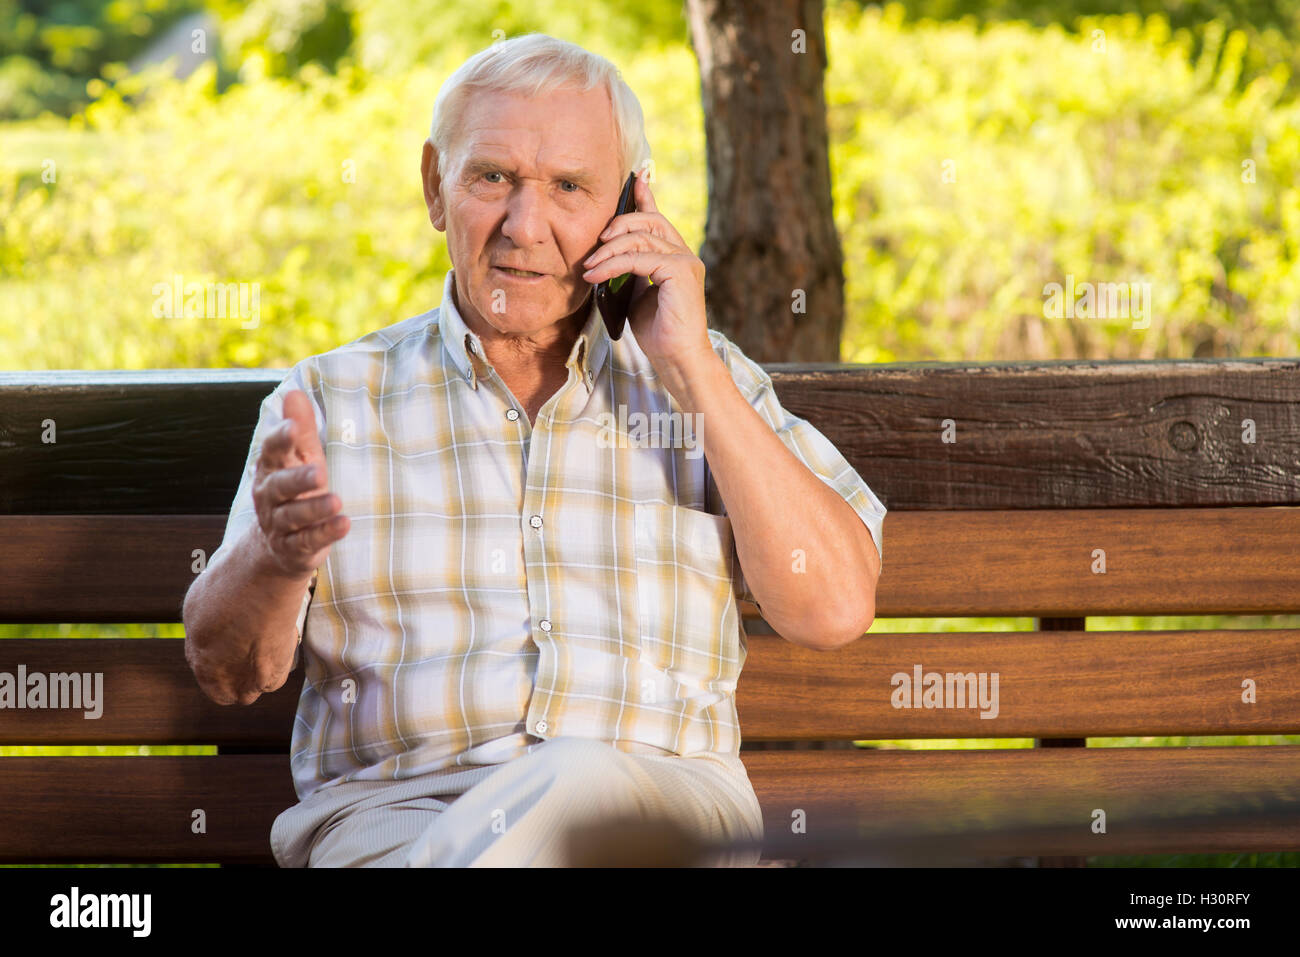 Это был пожилой мужчина. Пожилой мужчина с телефоном. Дед звонит. Грустный пожилой человек с телефоном. Пожилой мужчина в магазине.